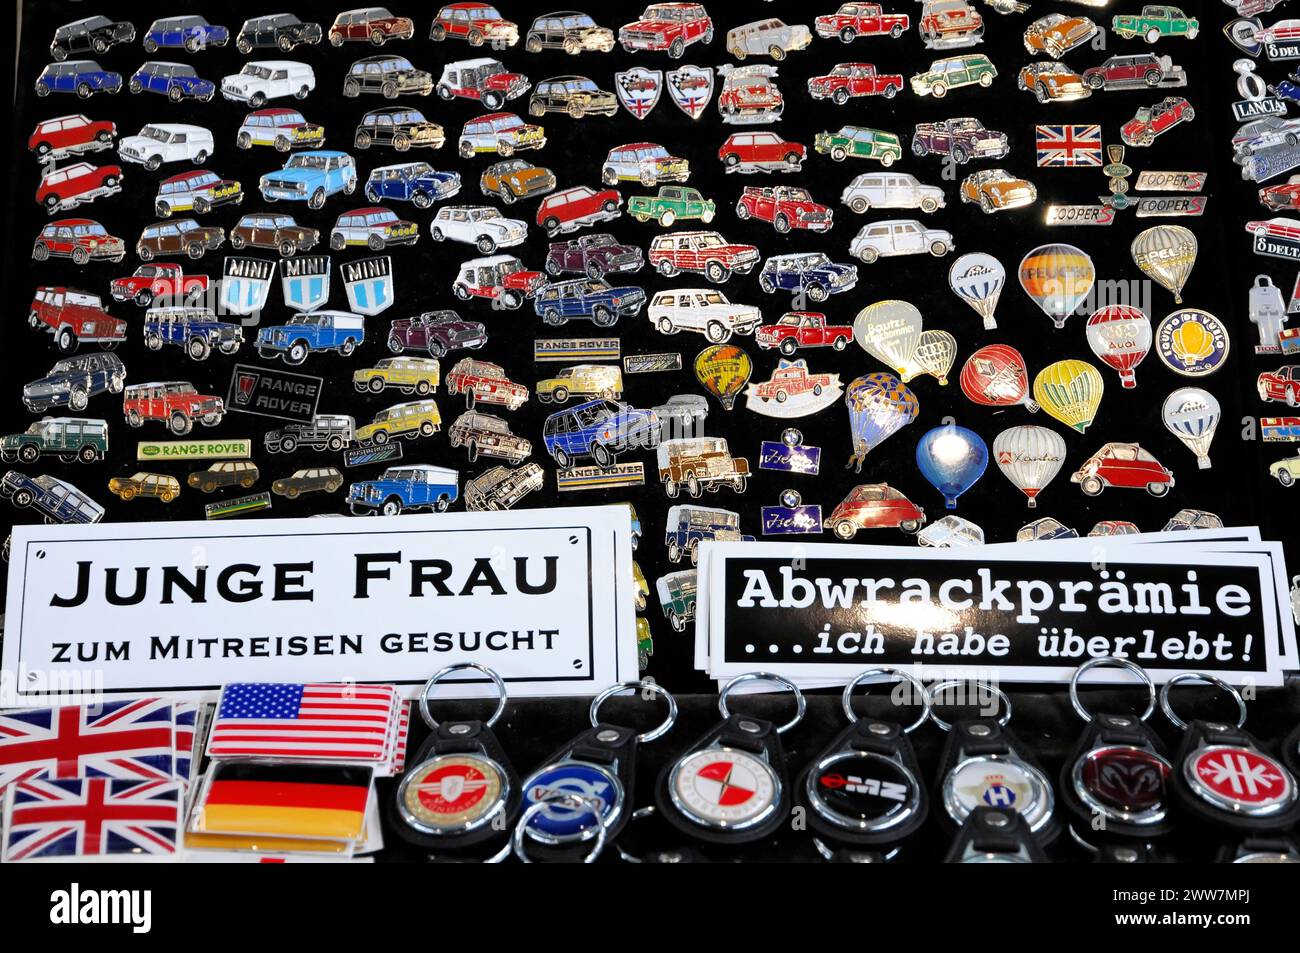 CLASSIQUES RÉTRO 2010, Stuttgart Messe, badges avec emblèmes de voitures et slogans humoristiques, Stuttgart Messe, Stuttgart, Bade-Wuerttemberg, Allemagne Banque D'Images